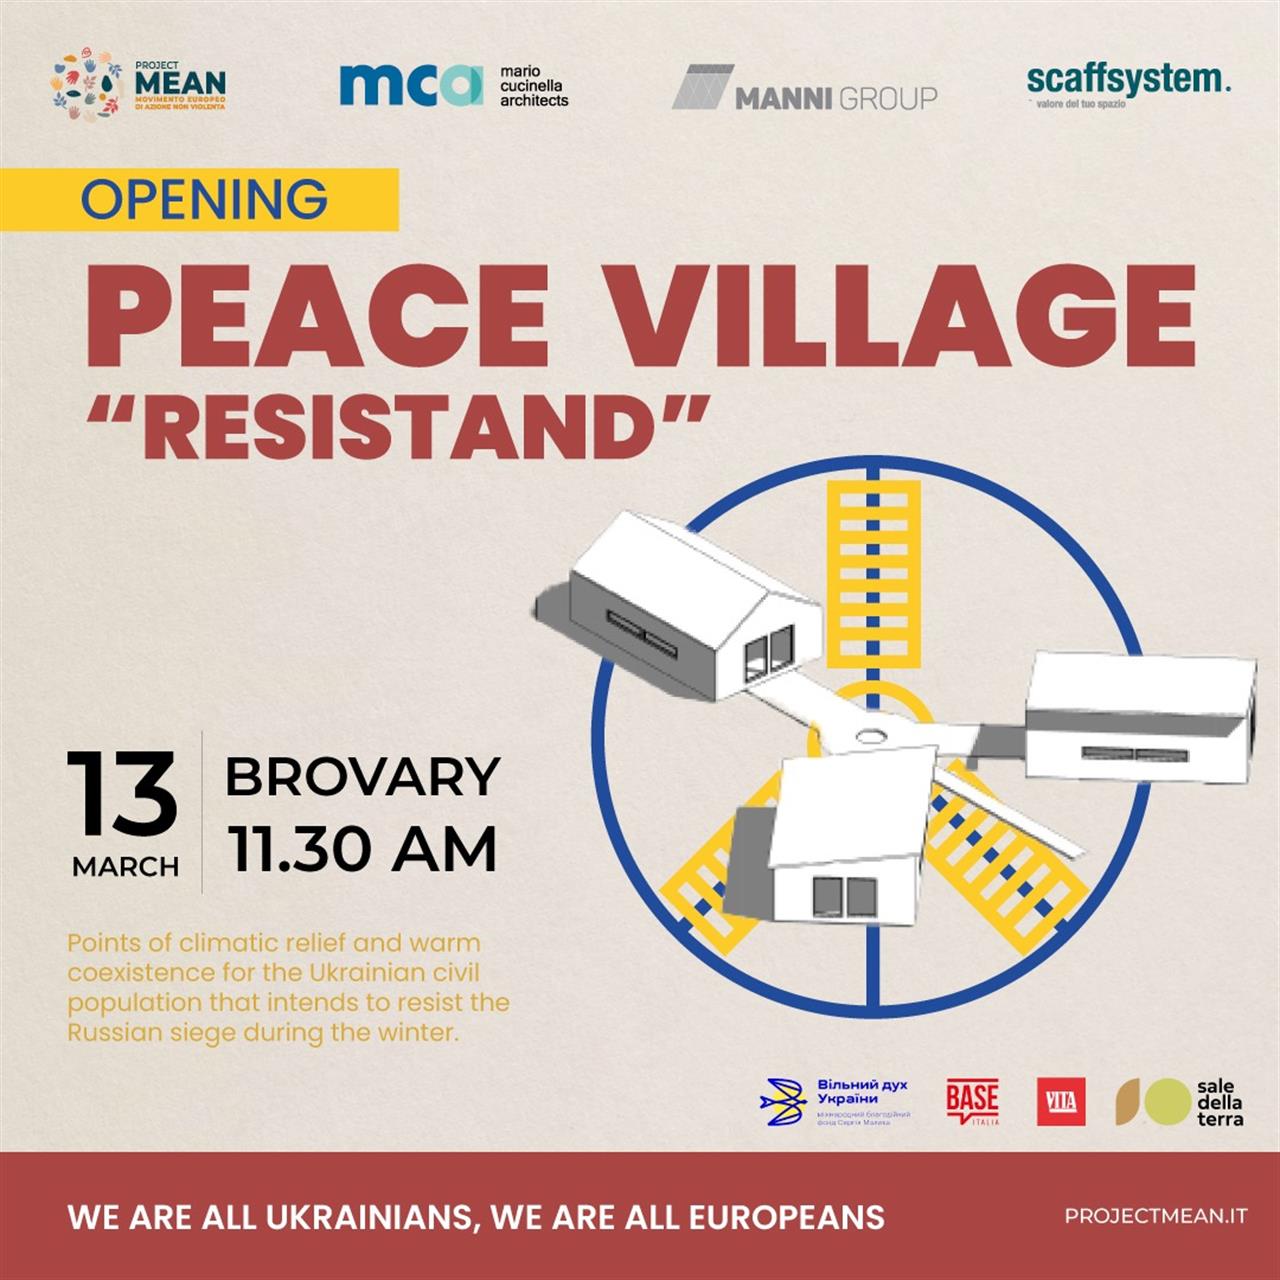 13 березня (понеділок) у Броварах відбудеться урочисте відкриття «Містечка Миру» (Peace Village).